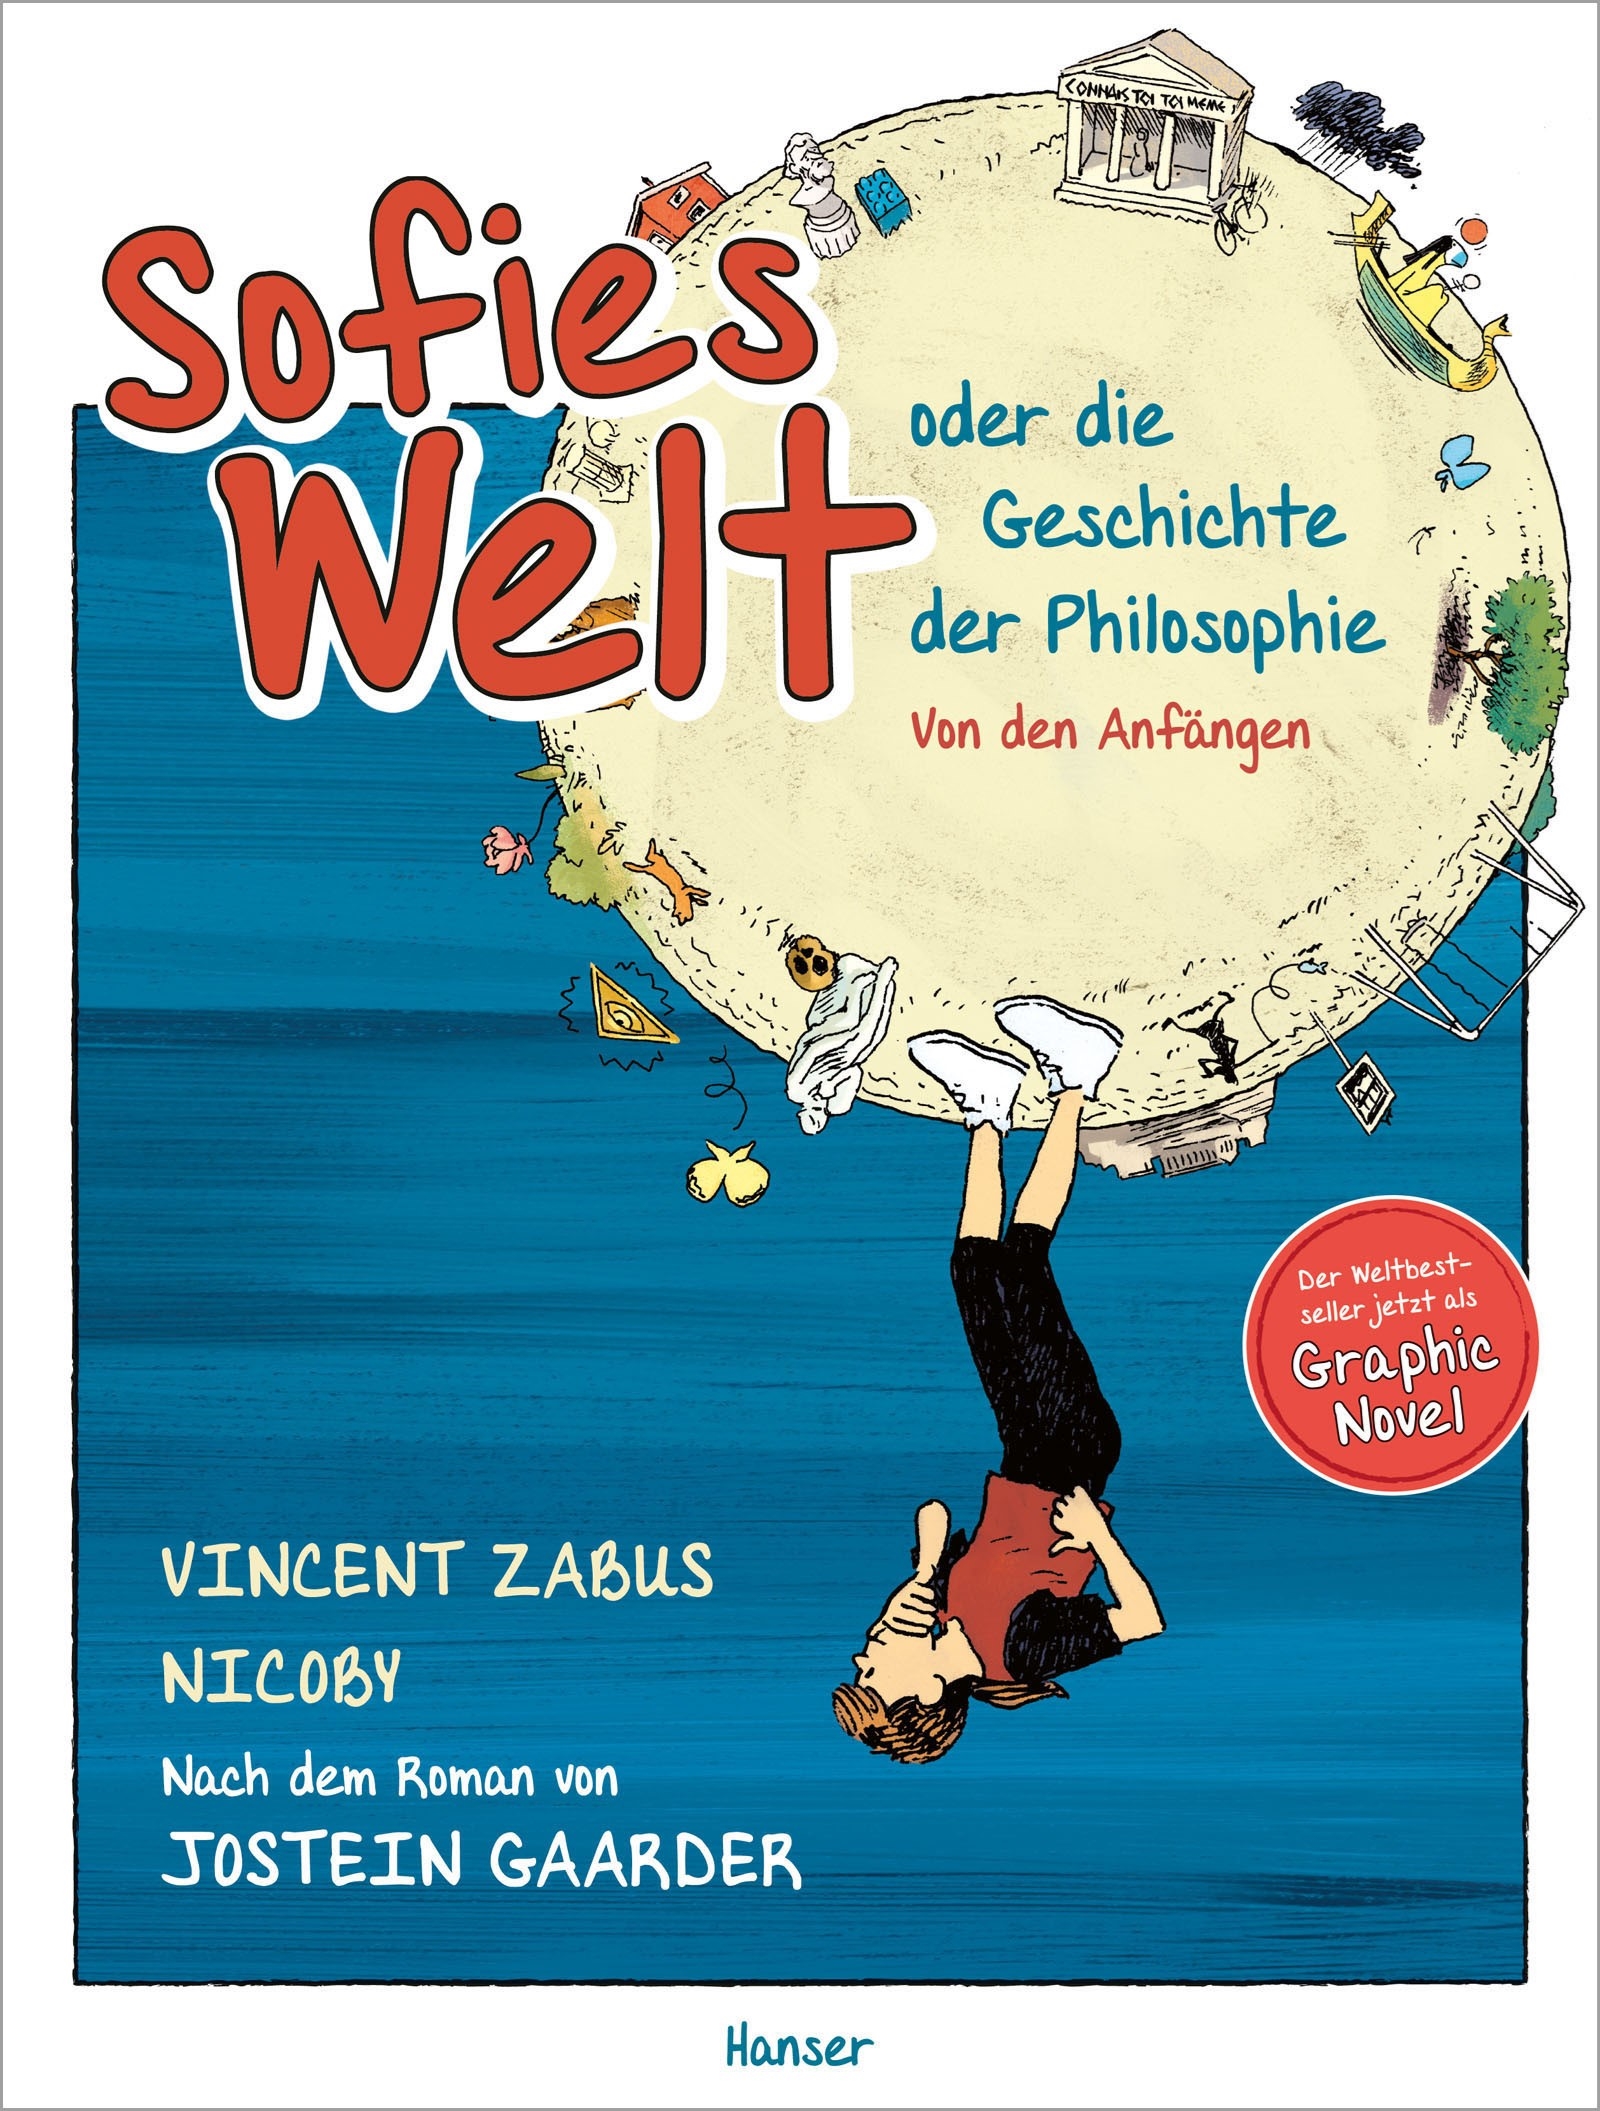 Sofies Welt oder die Geschichte der Philosophie (GraphicNovel, Deutsch language, Hanser)